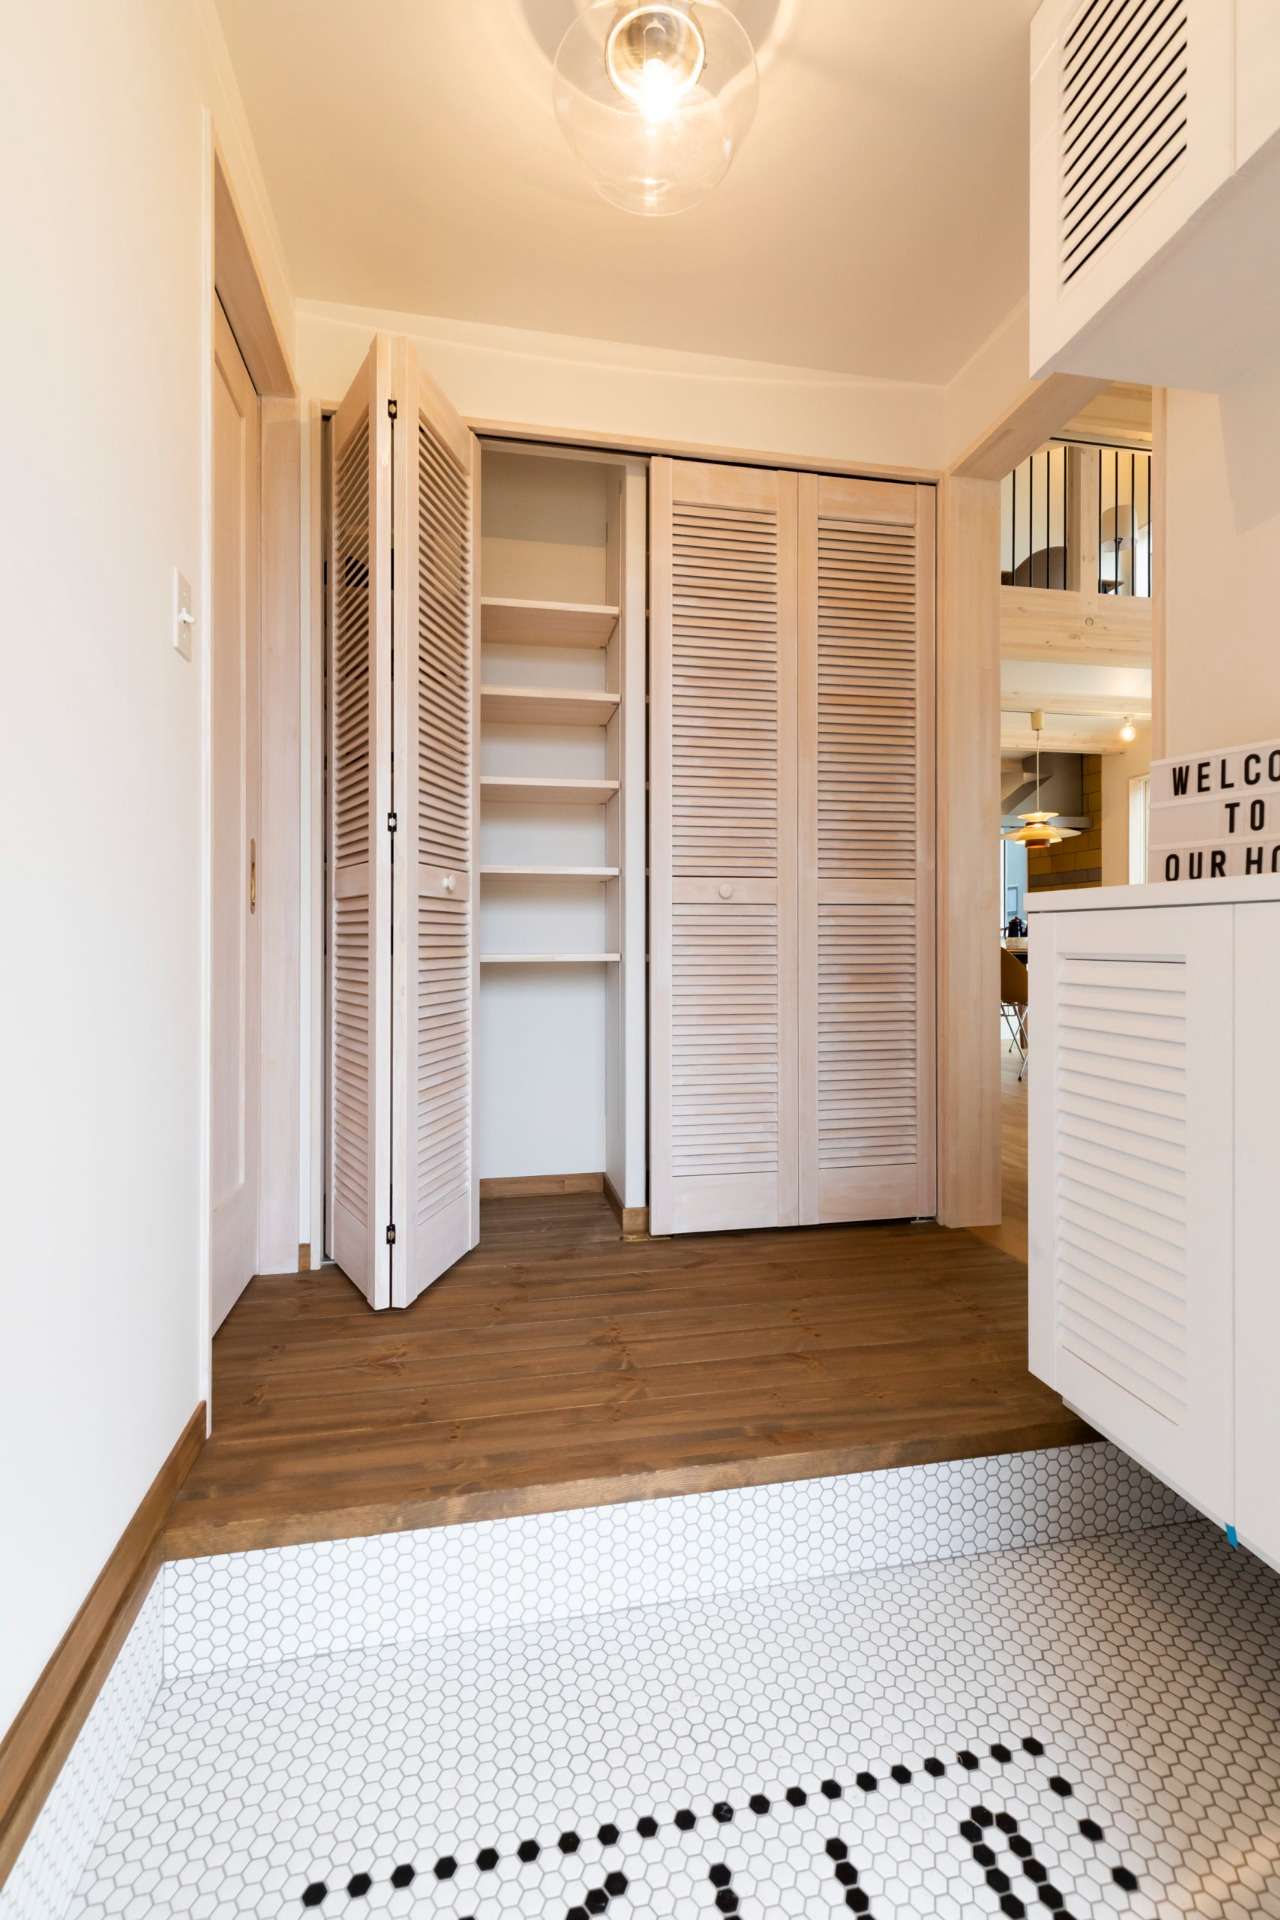 【1F　玄関】<br>モザイクタイルがかわいい玄関。<br>季節によって靴やコートなどを入れ替えられる便利な玄関収納スペースを確保。